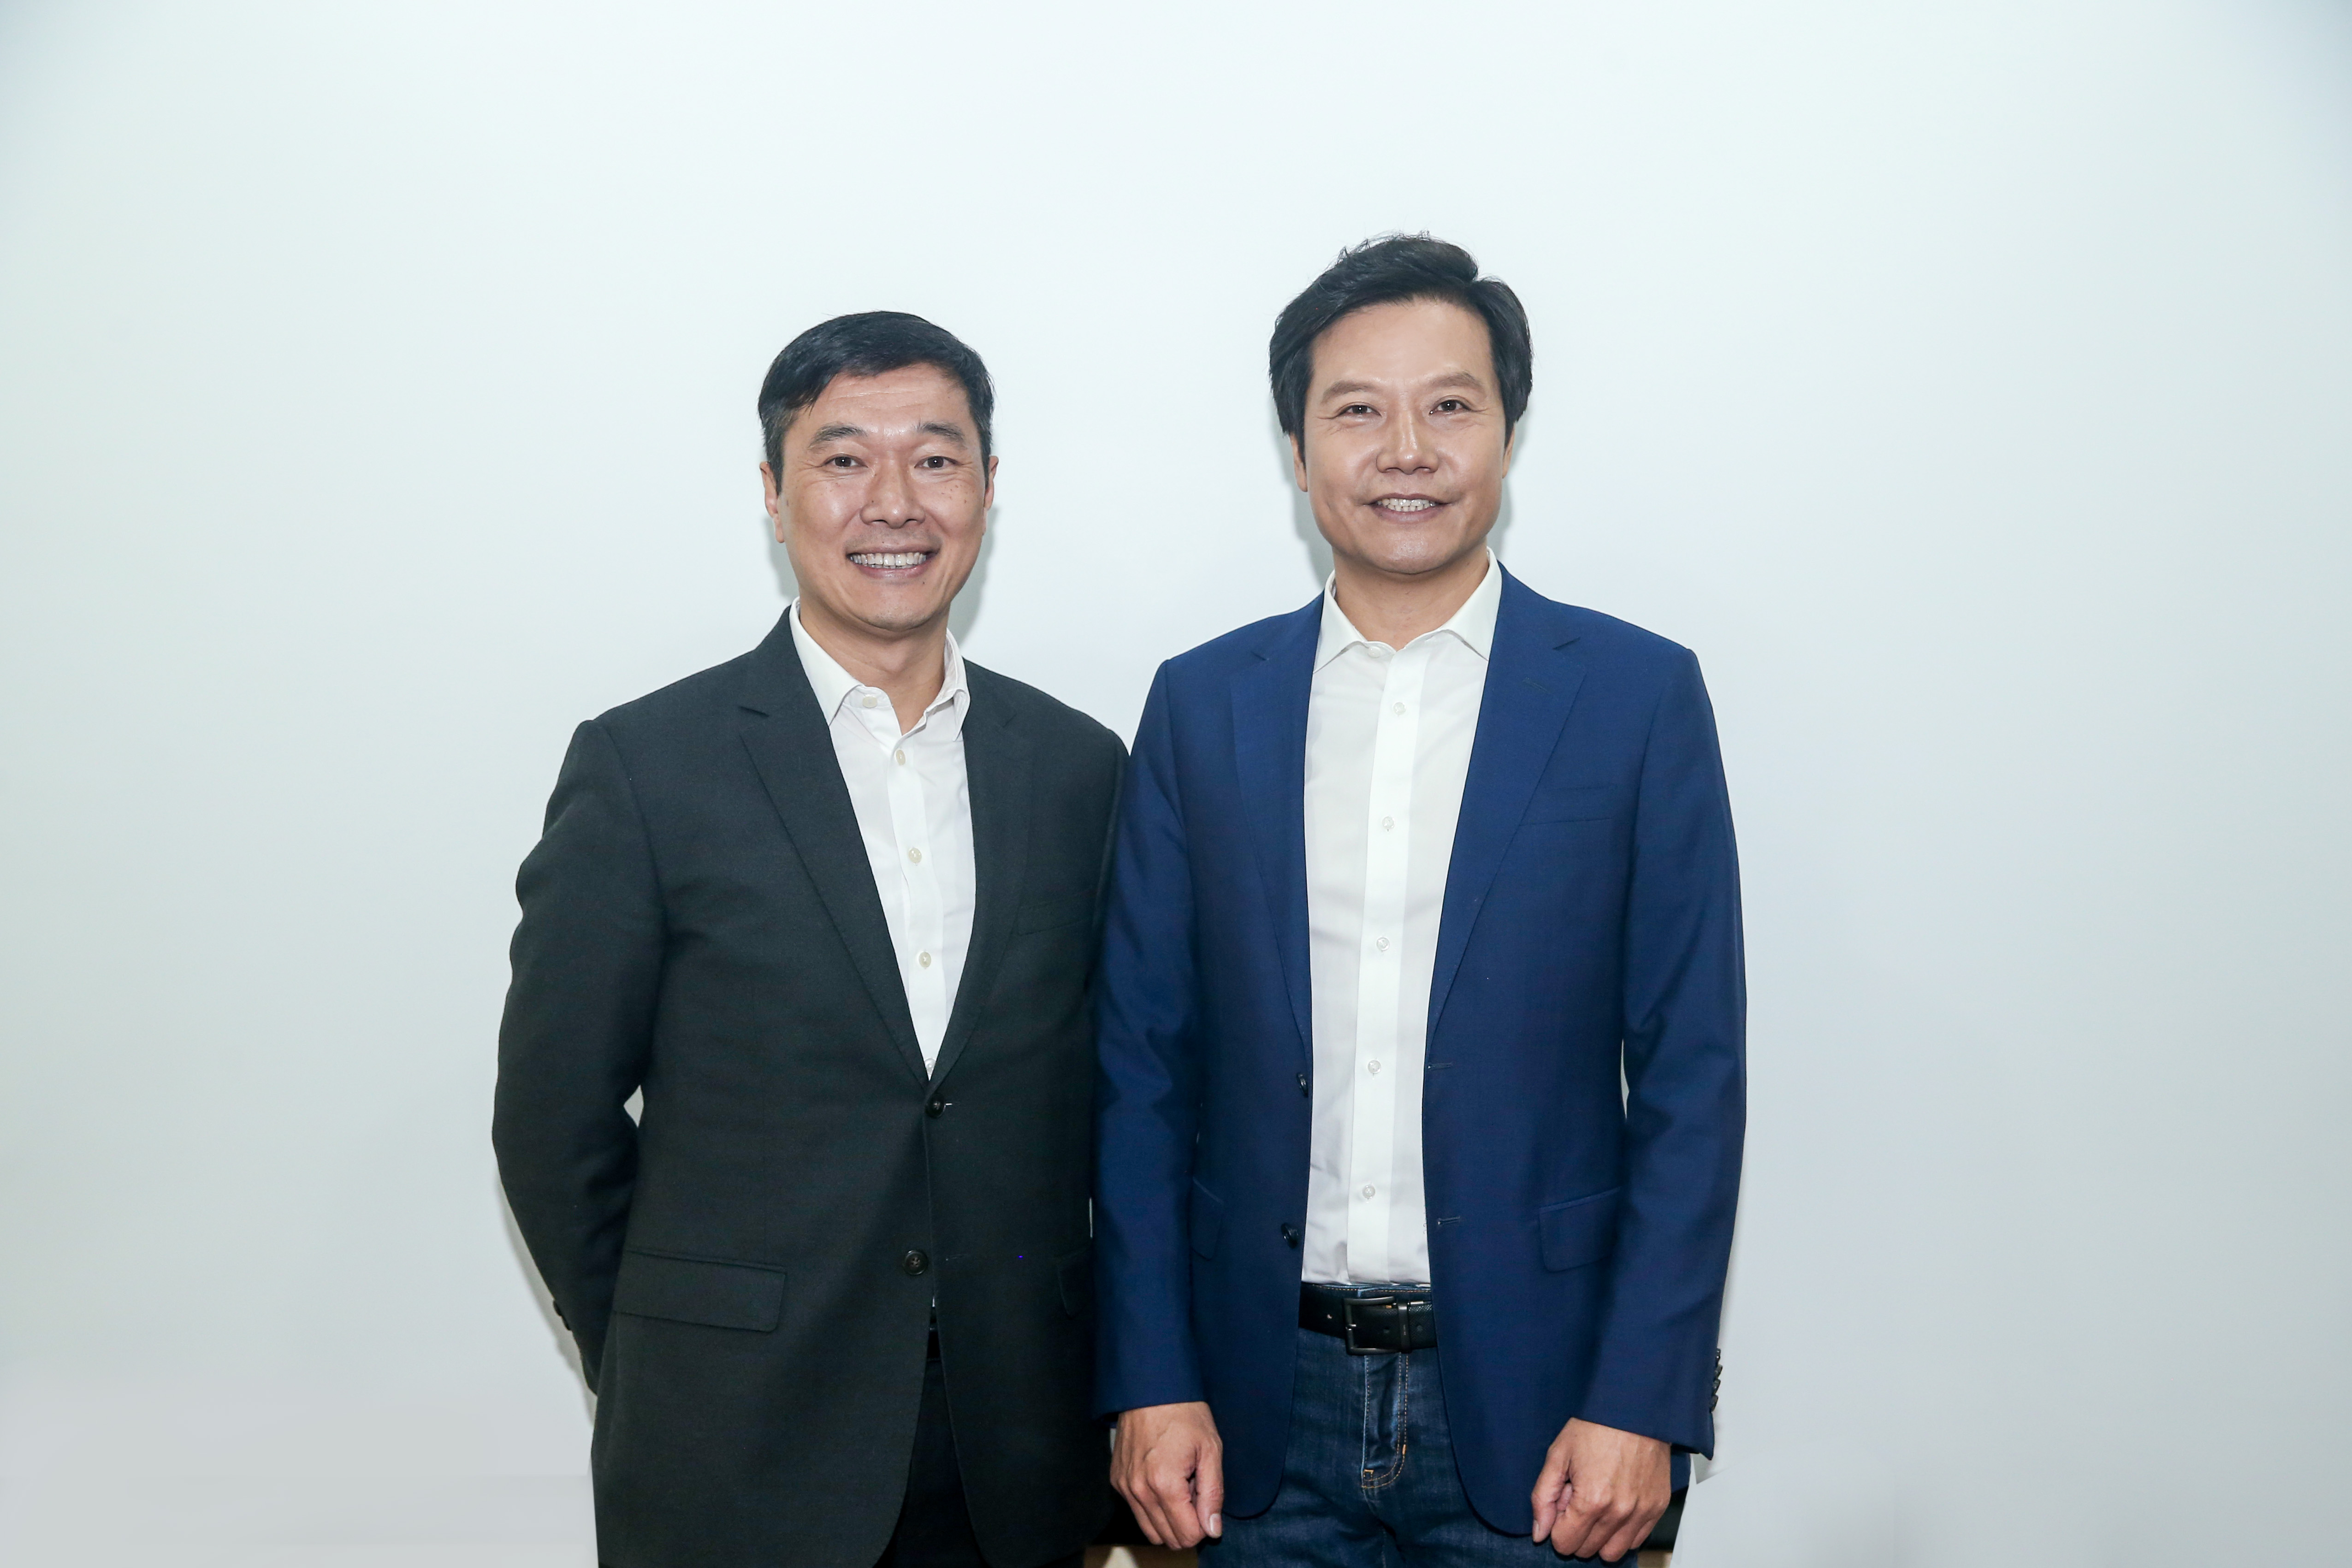 微软中国首席运营官邹作基与小米CEO雷军合影